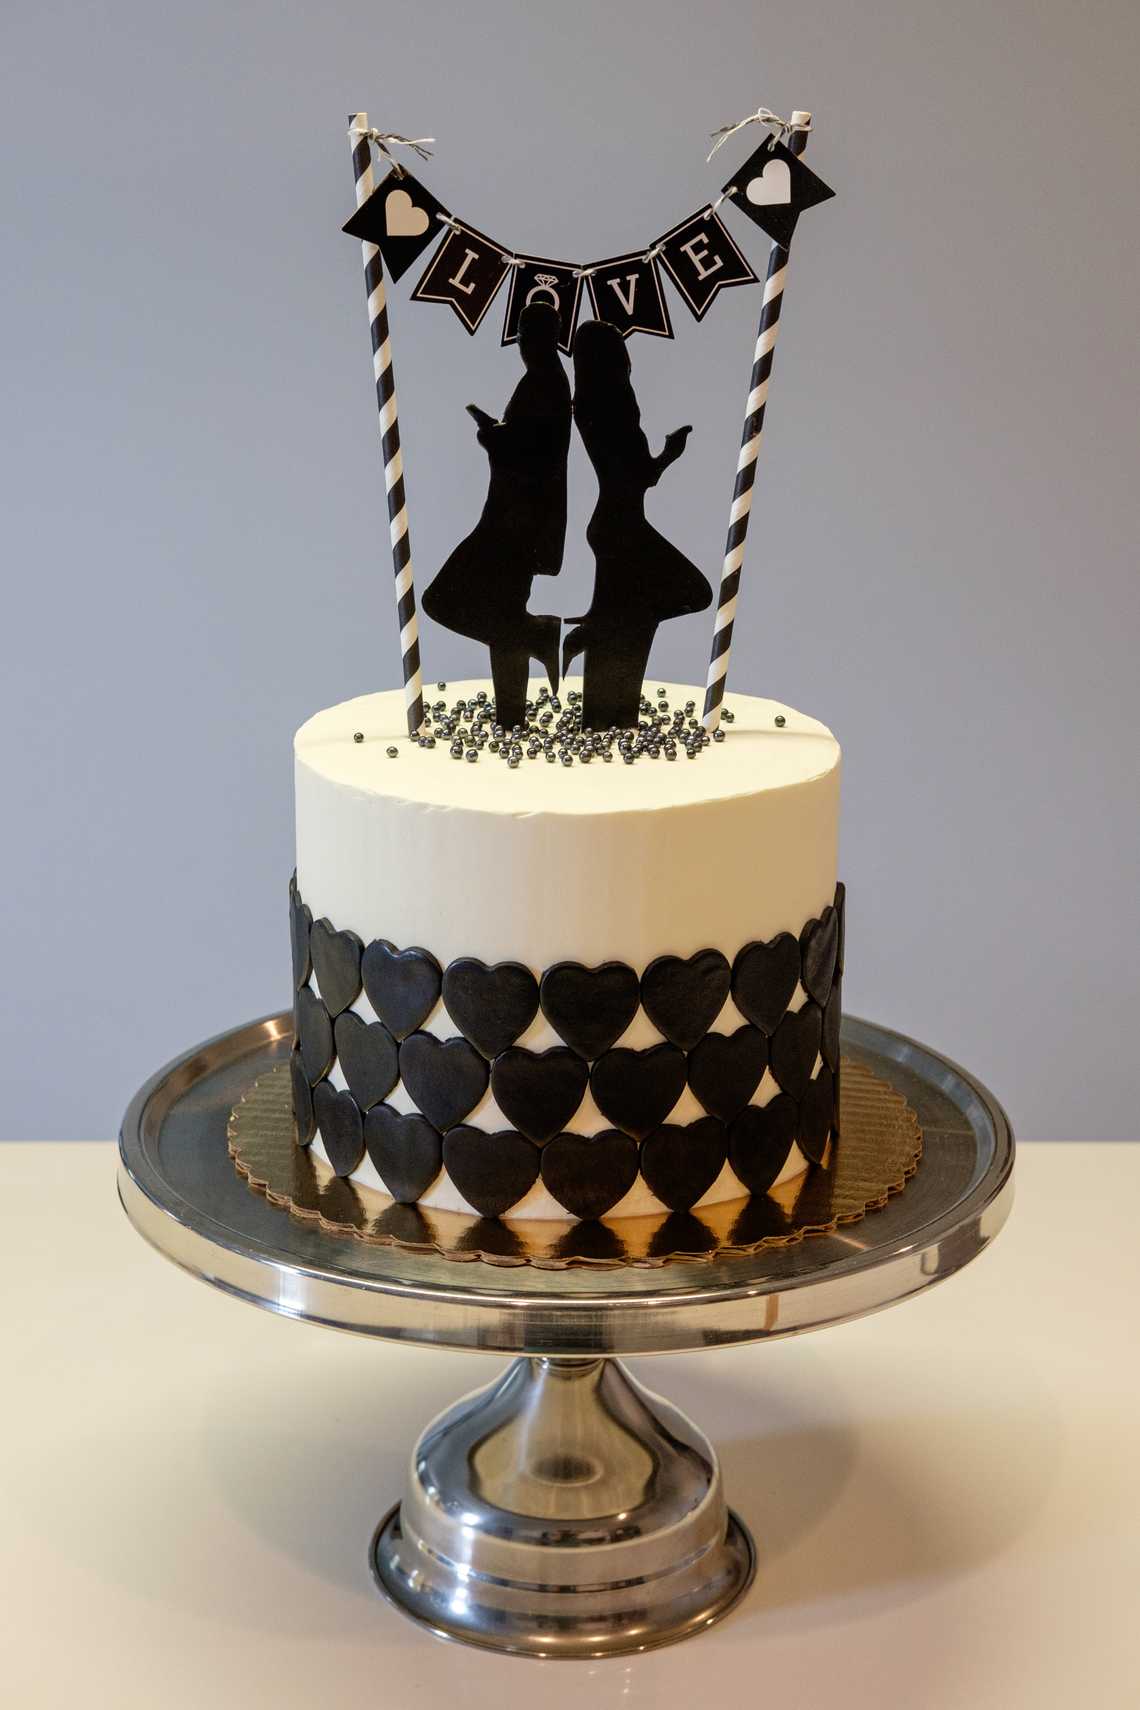 Mr. and Mrs. Smith Cake — September 11, 2016